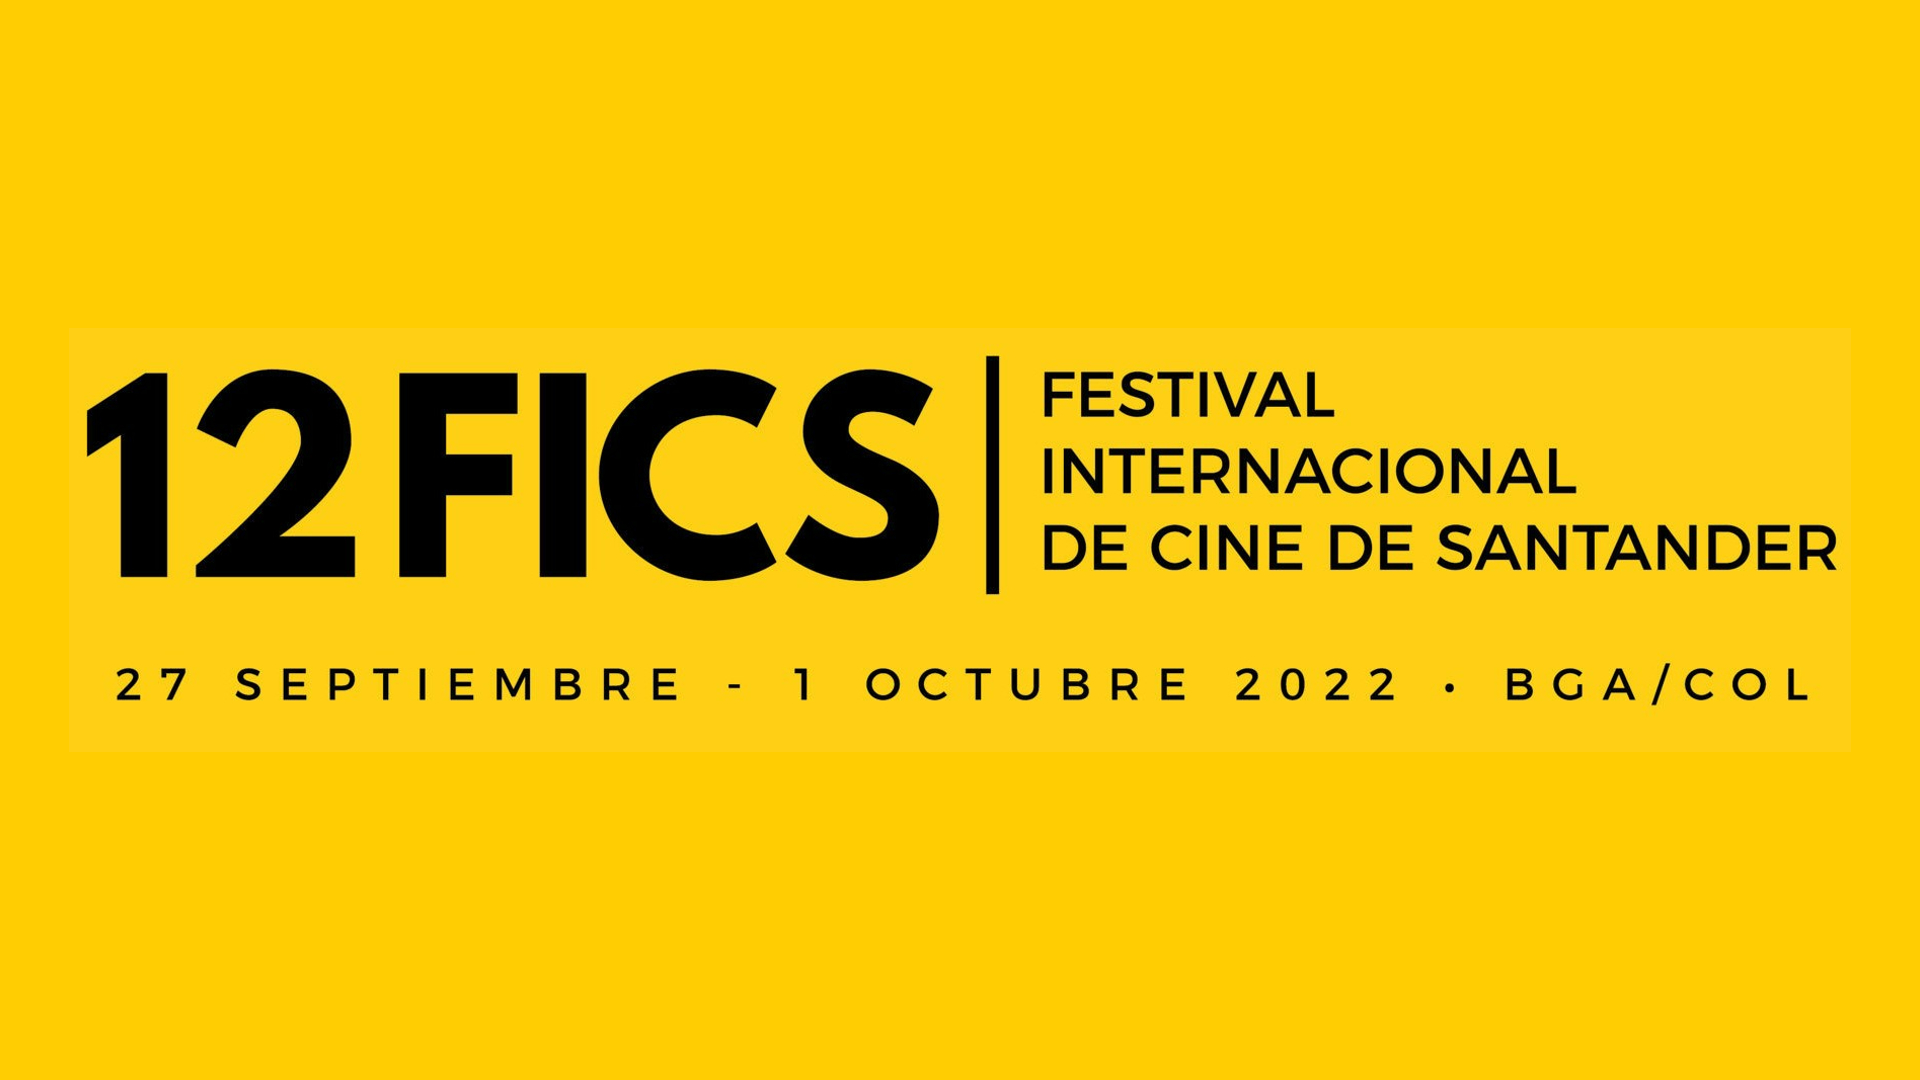 Quedan pocos días para participar en el Festival Internacional de Cine de Santander